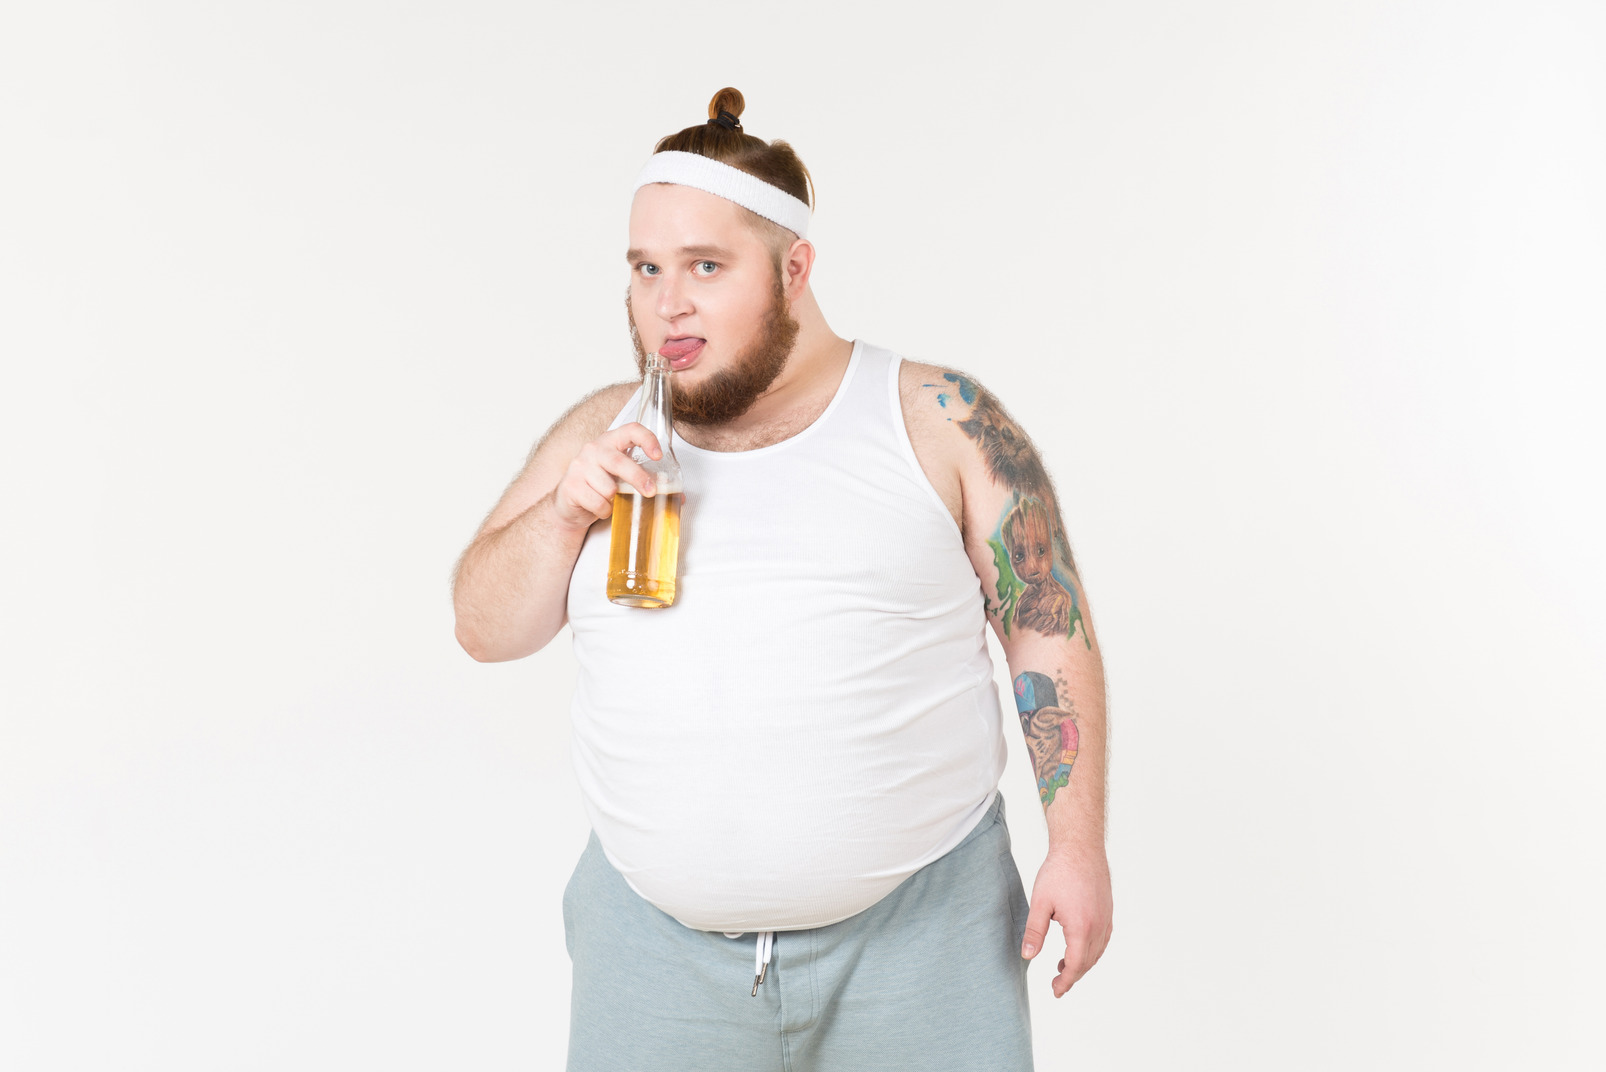 A fat man in sportswear drinking beer from the bottle